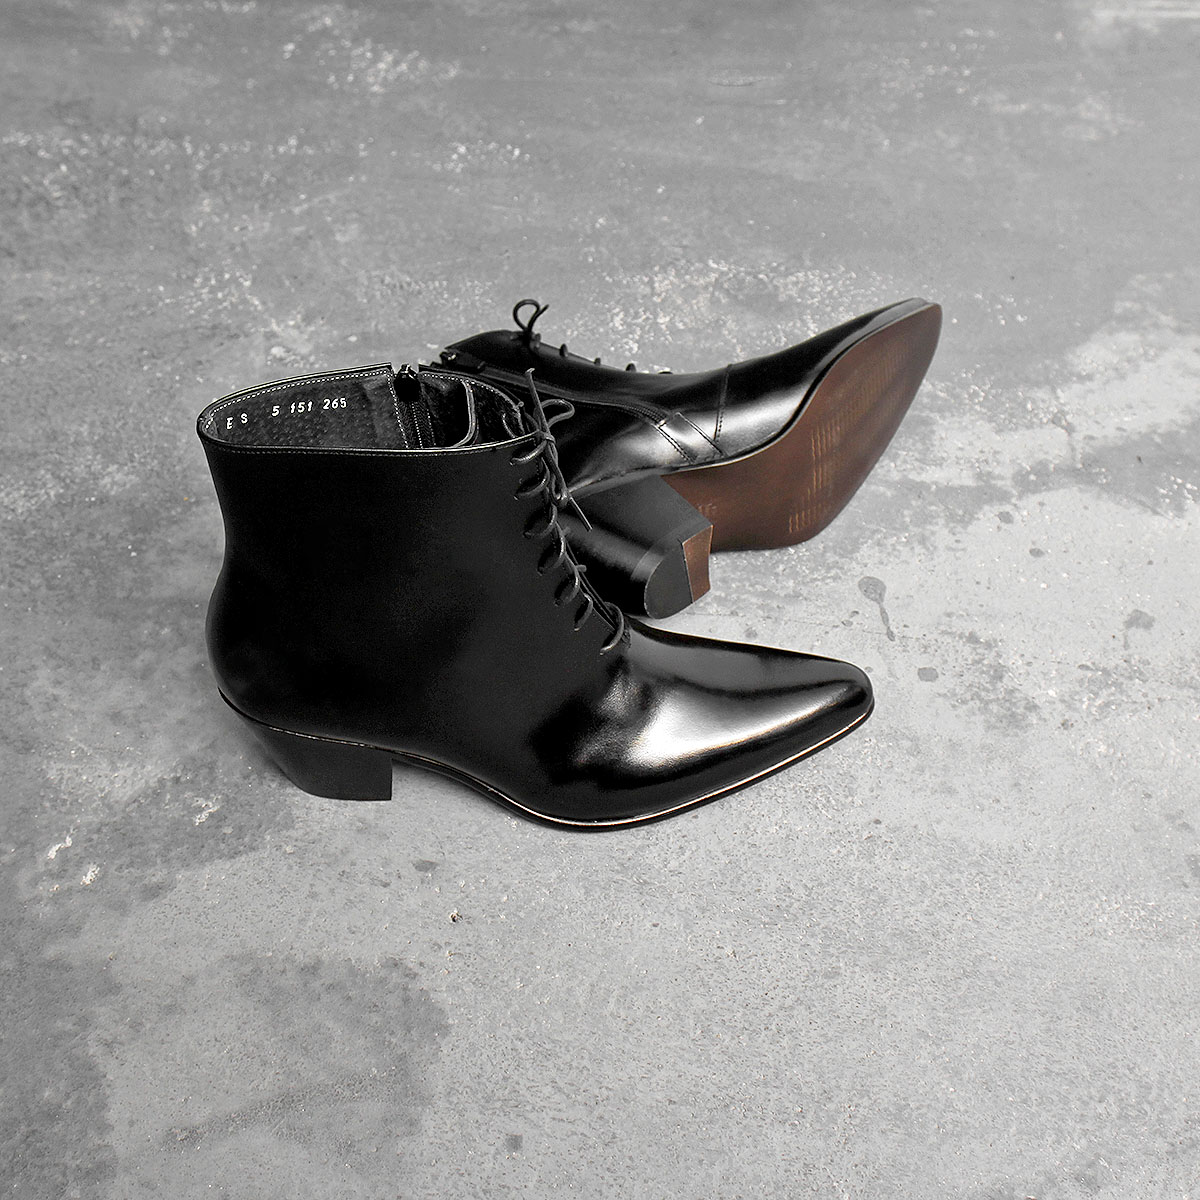 5151] 7cm High Heel Black Leather Ankle Boots – lepor